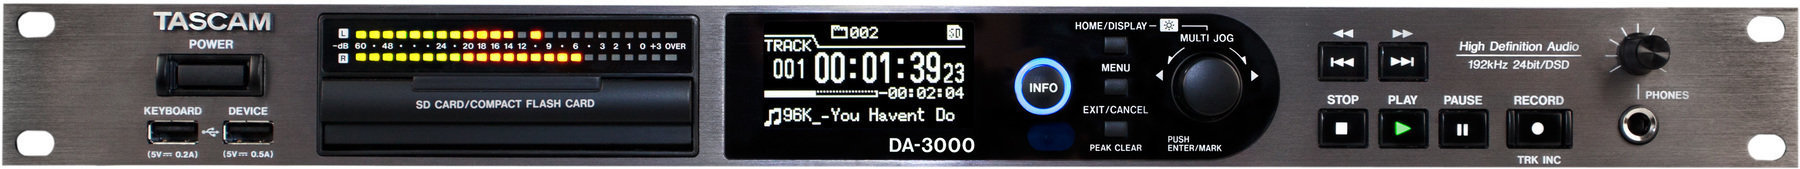 Maître / Stéréo enregistreur Tascam DA-3000